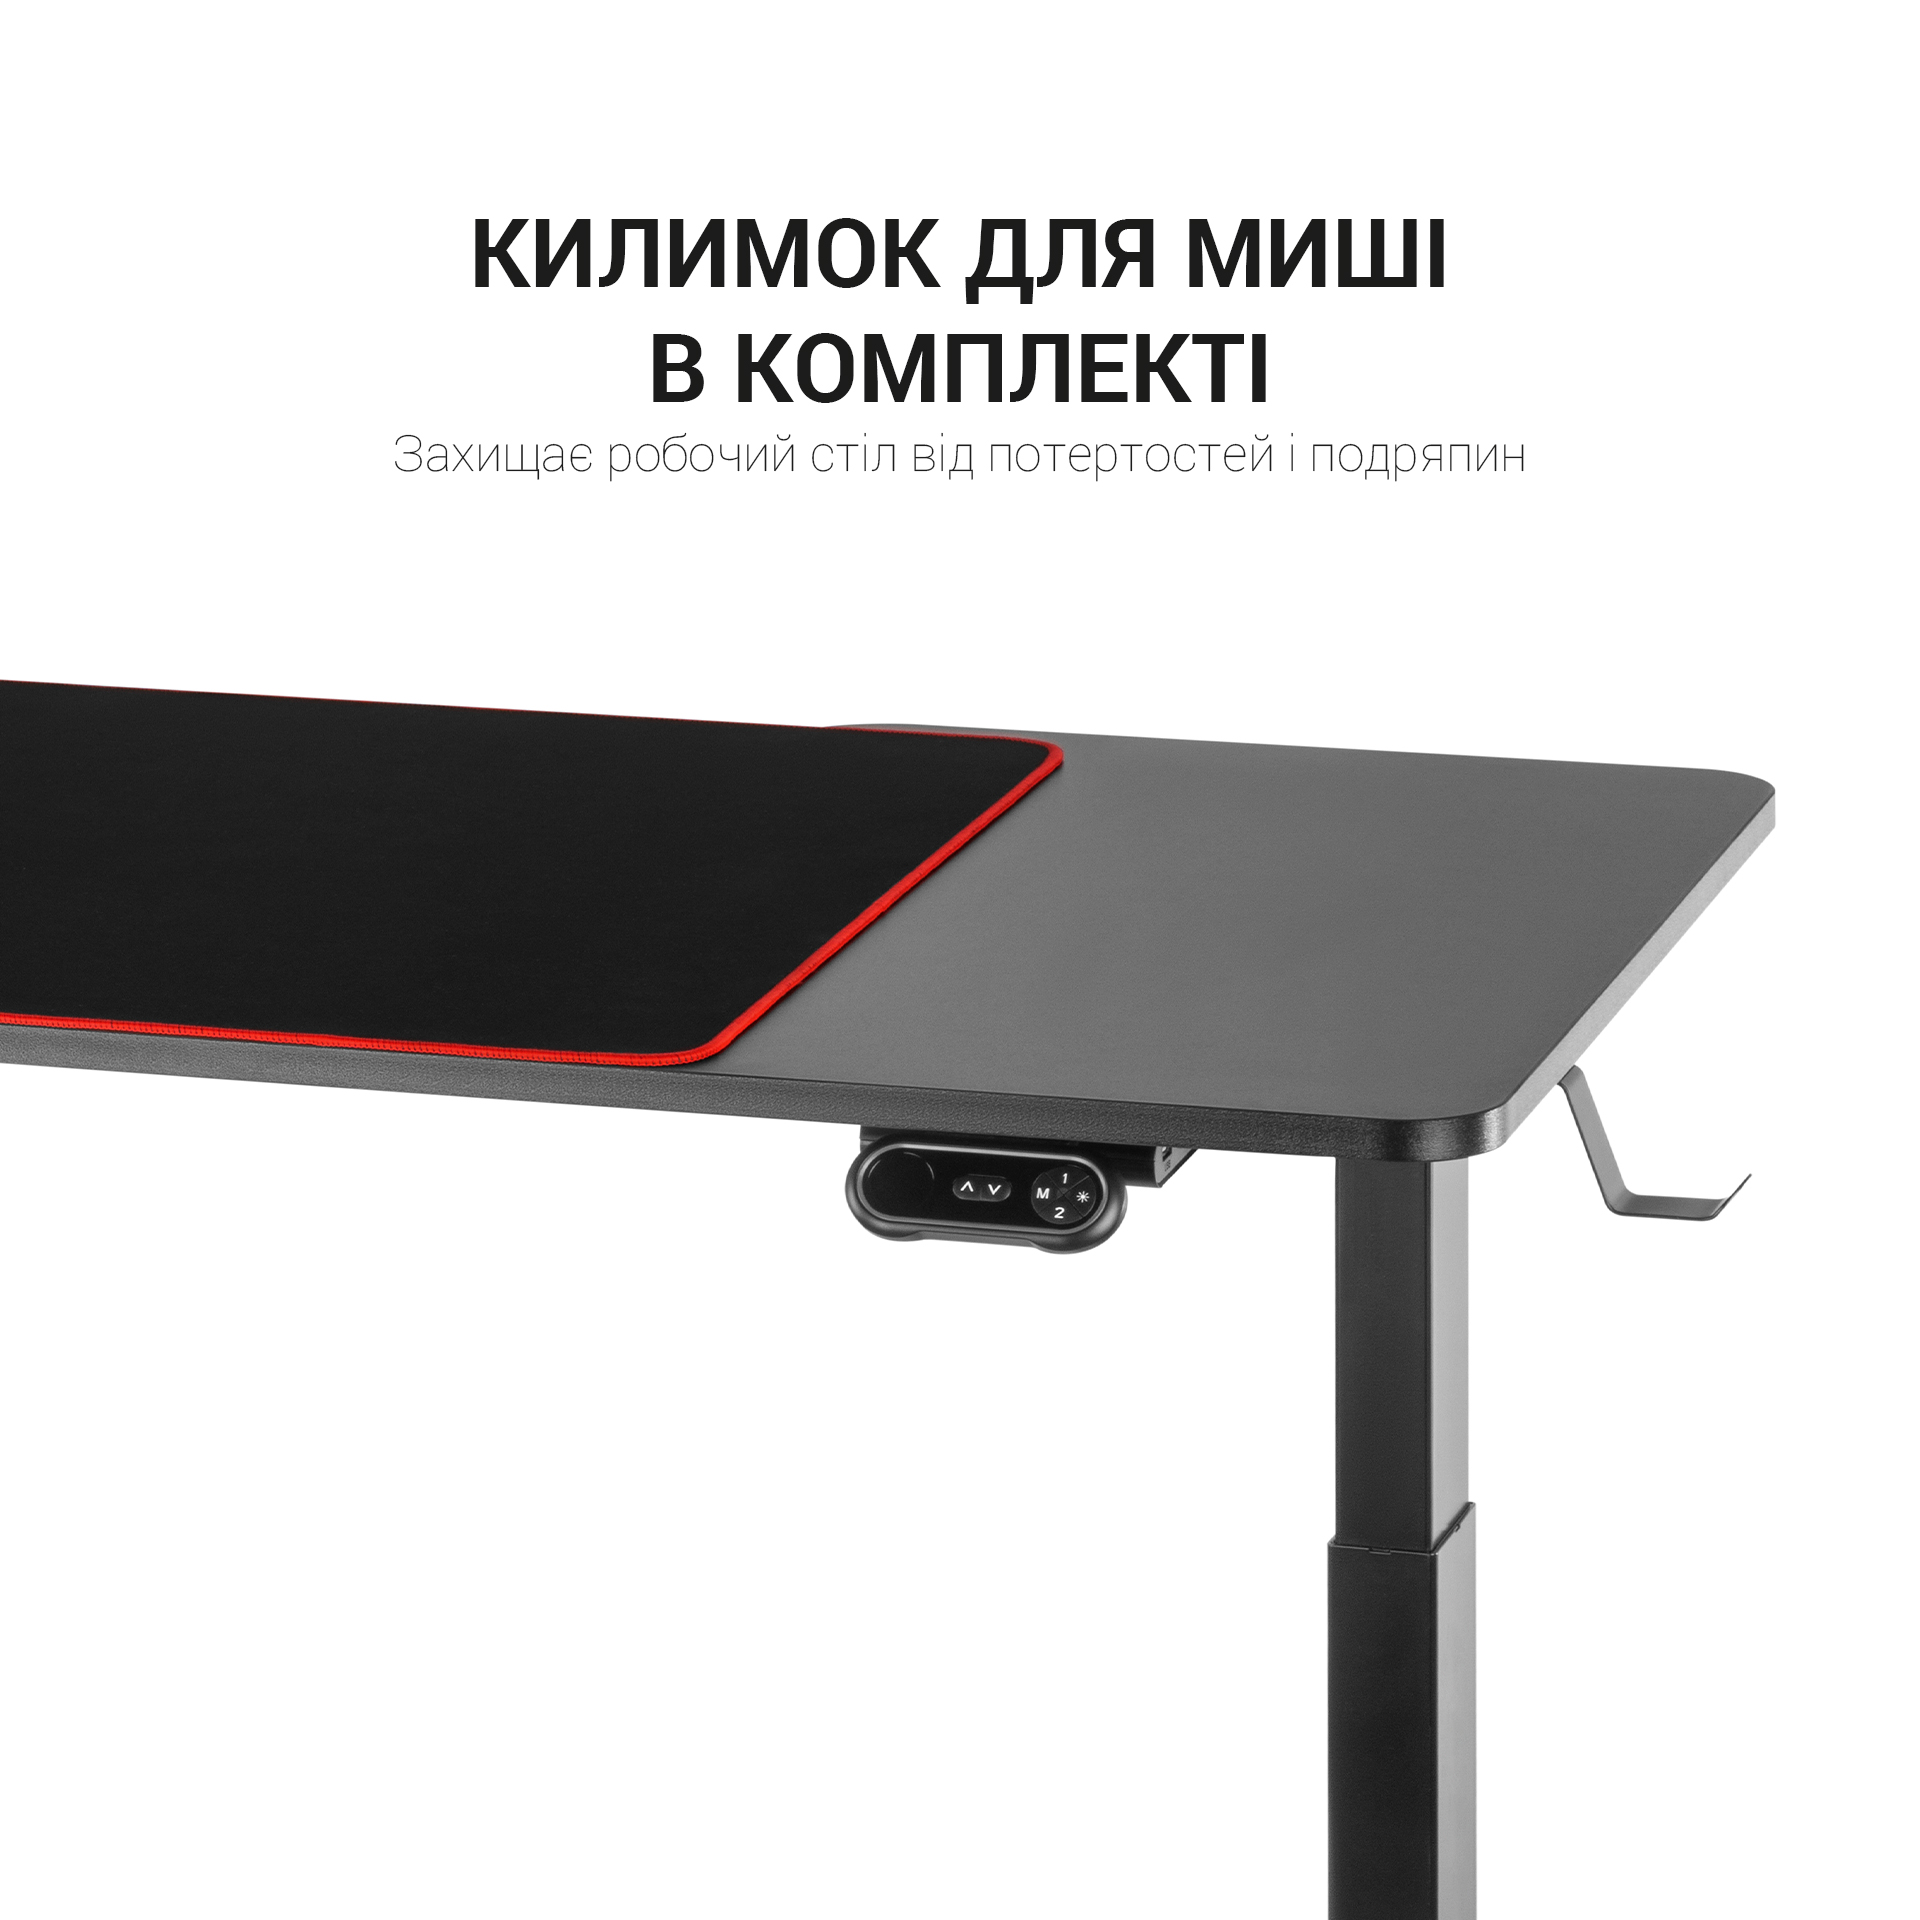 Комп'ютерний стіл OfficePro з електрорегулюванням висоти чорний (ODE514) - фото 9